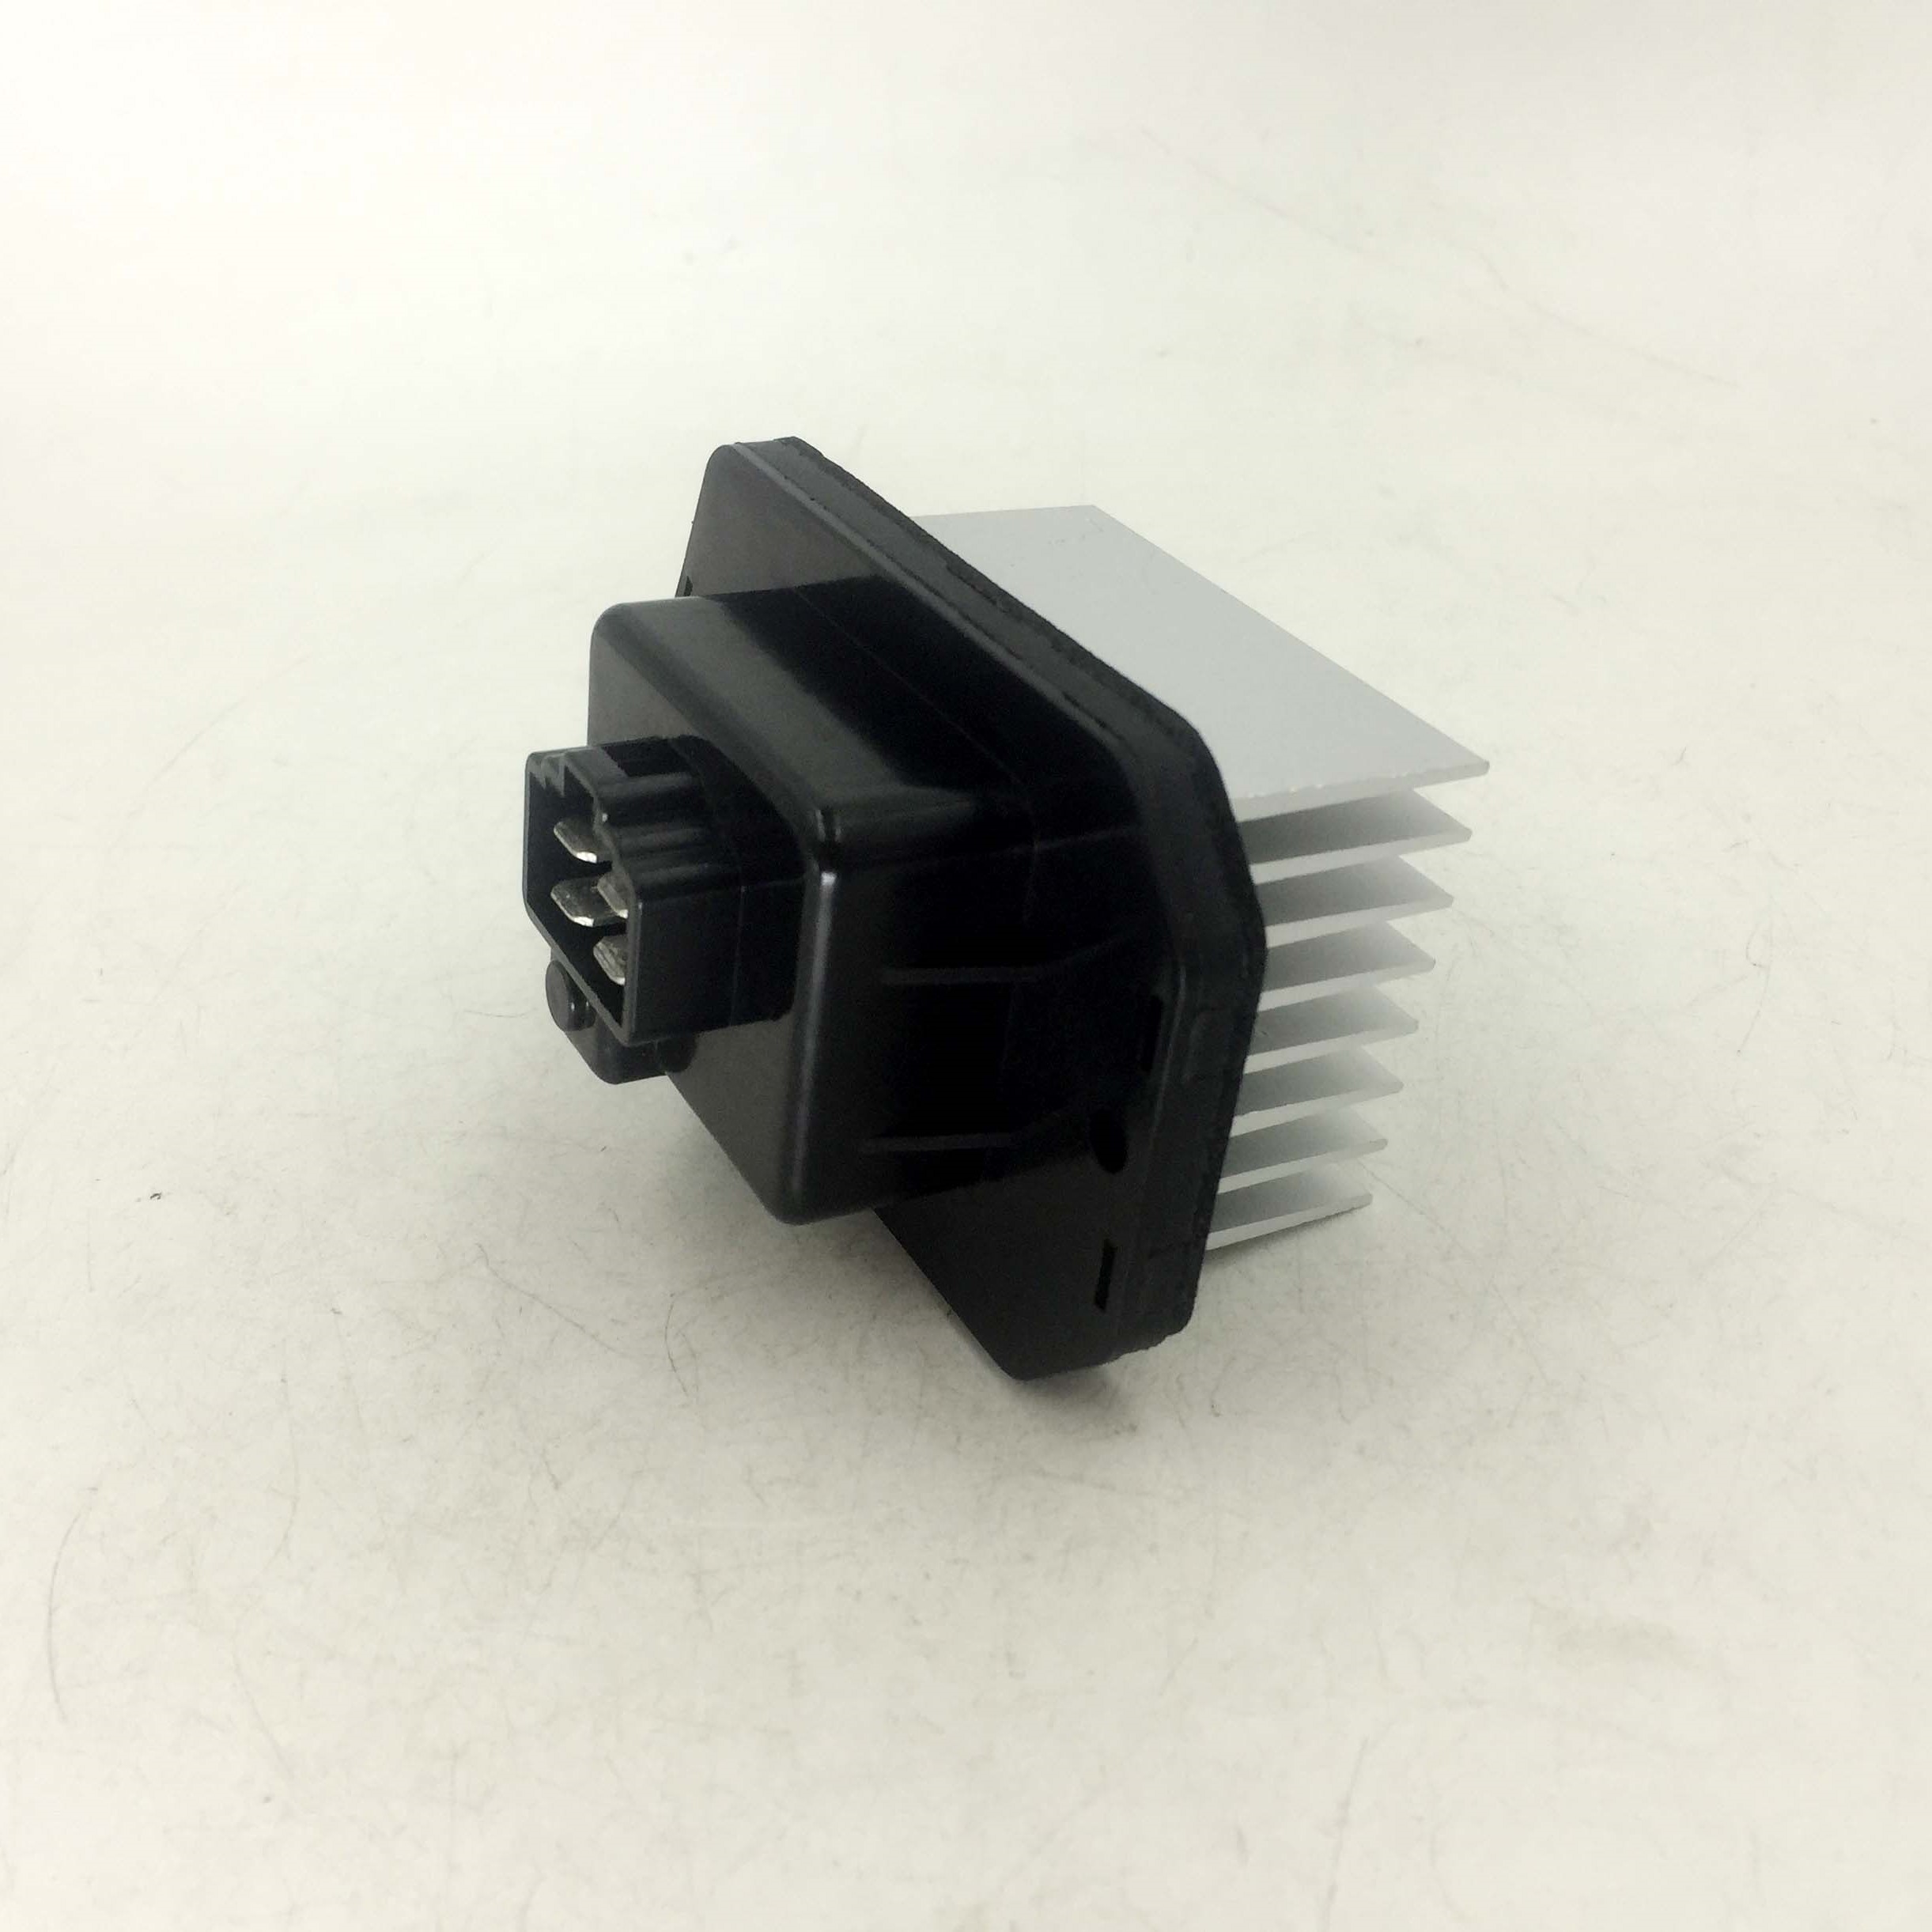 blower motor resistor for Engineering vehicle SG077800-1170